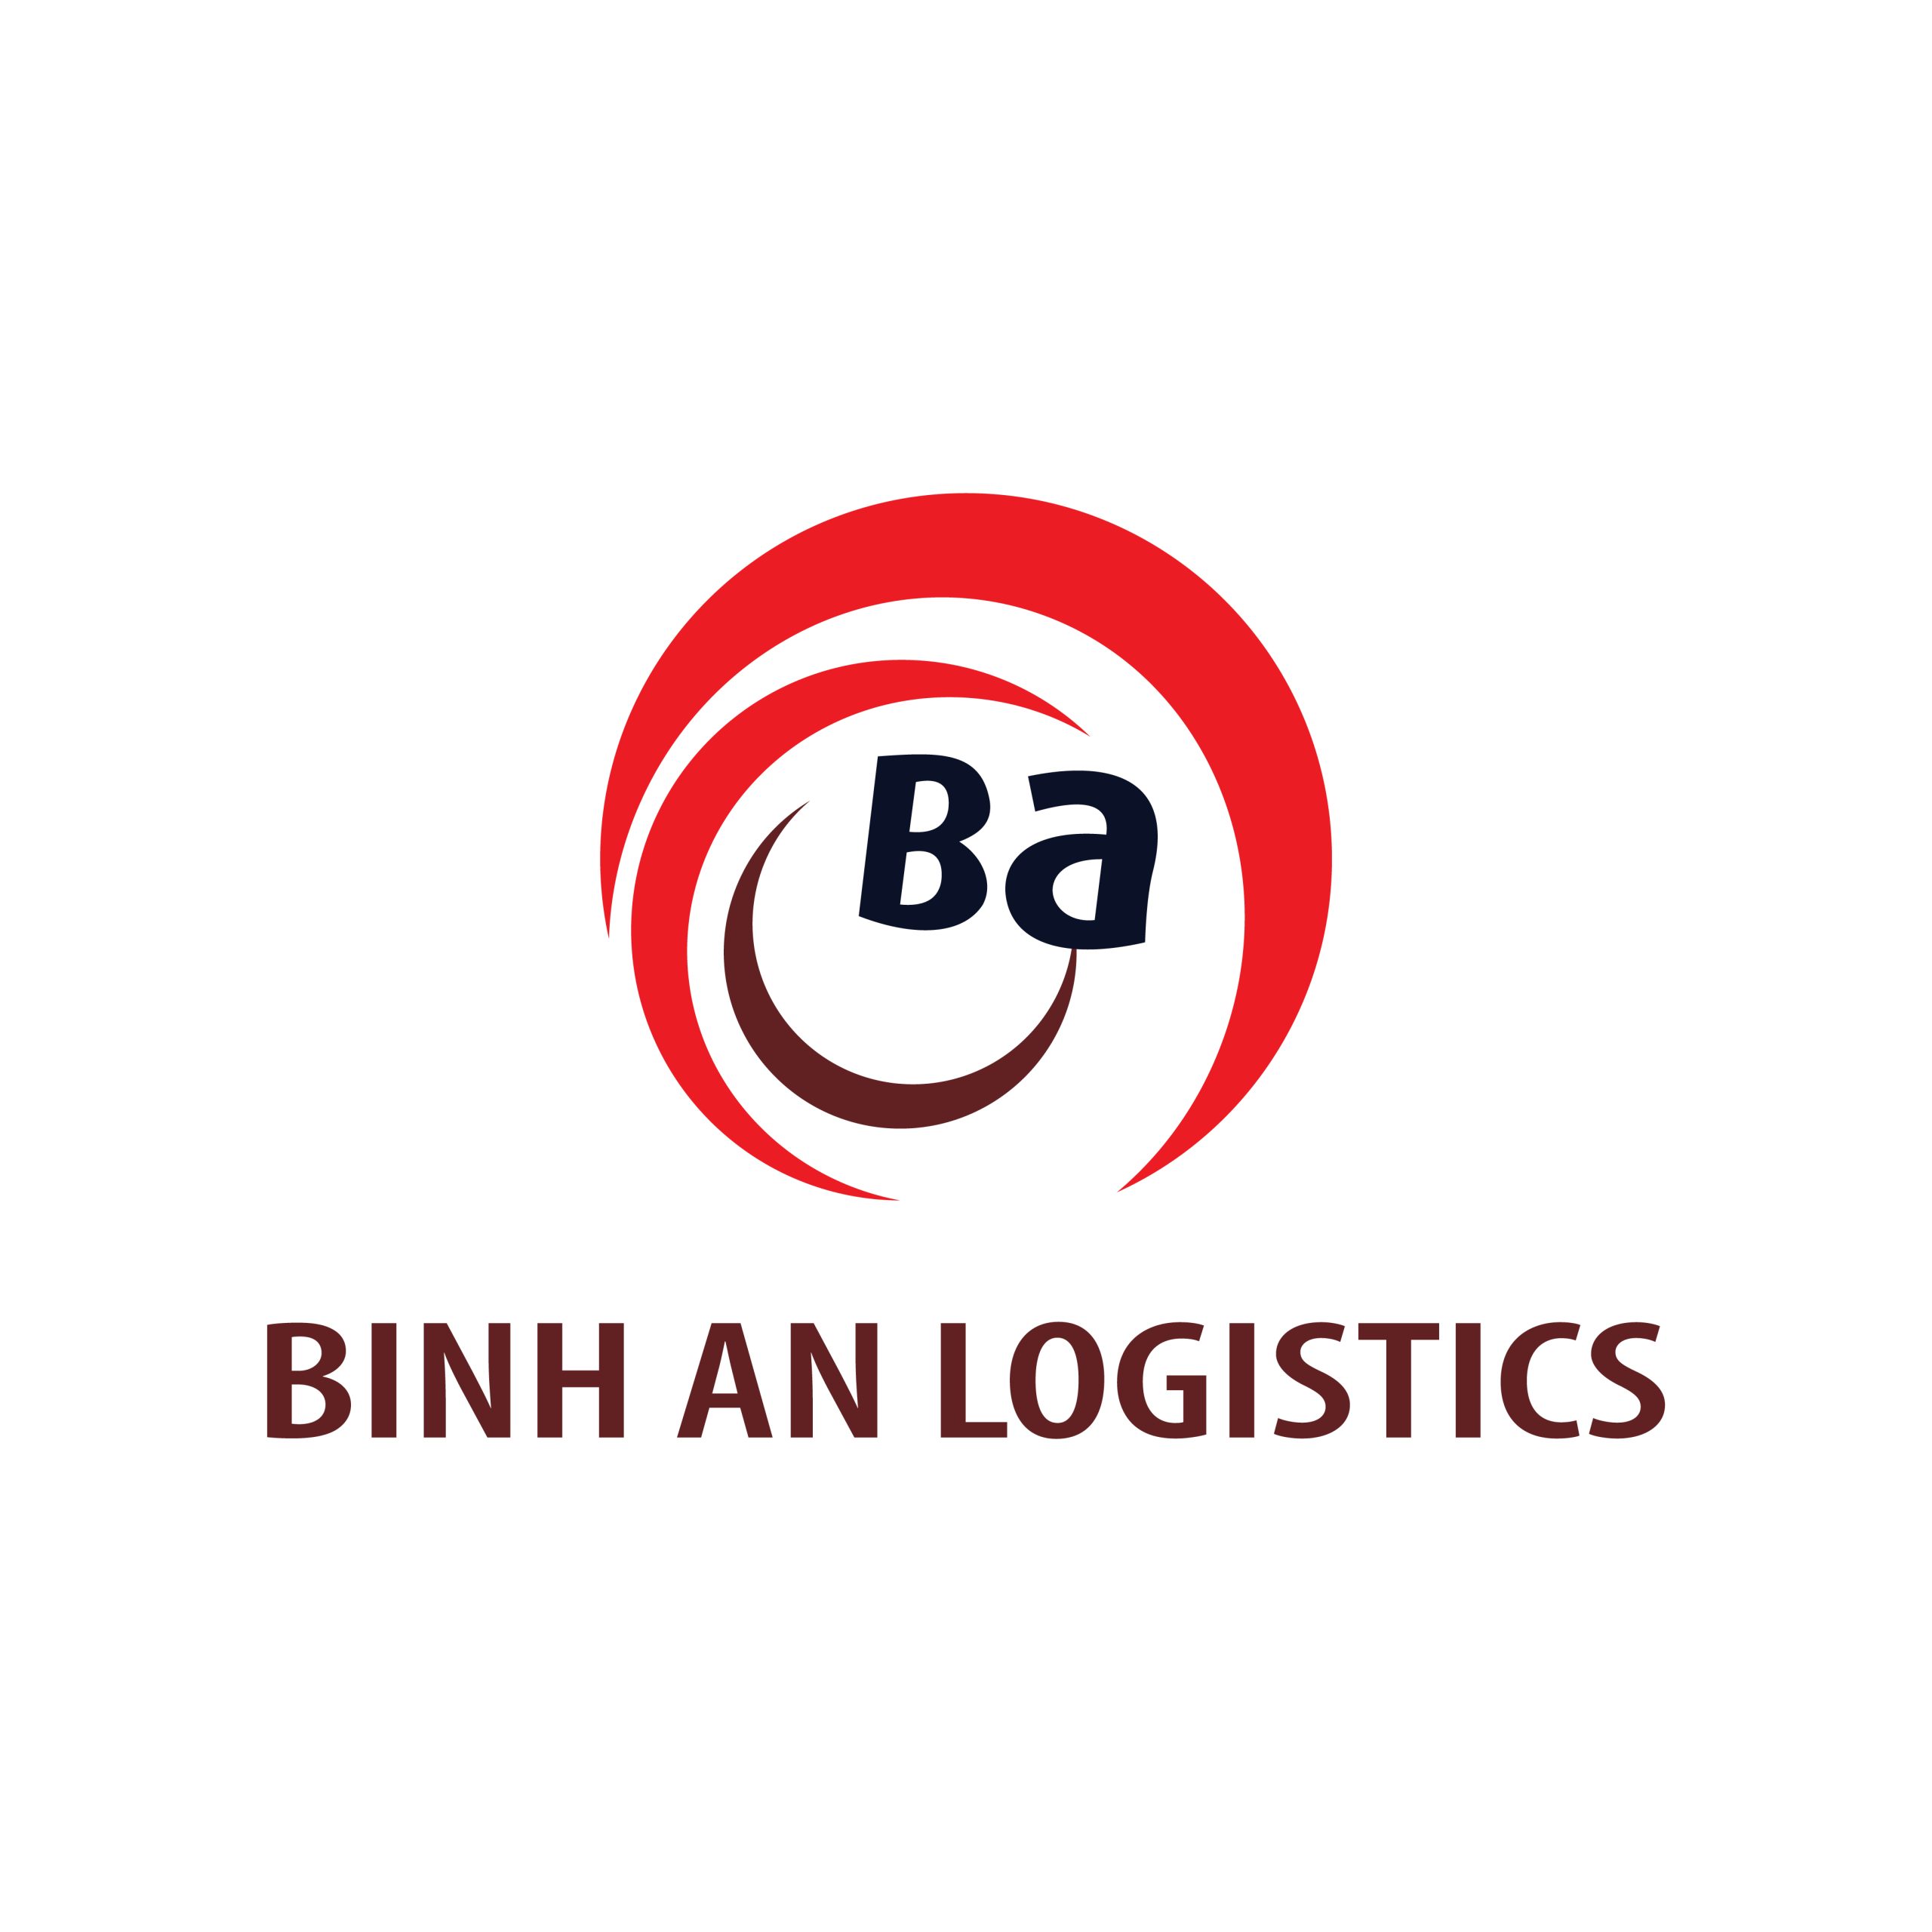 Bình An Logistics - Cung cấp dịch vụ logistics toàn diện và tư vấn hải quan miễn phí